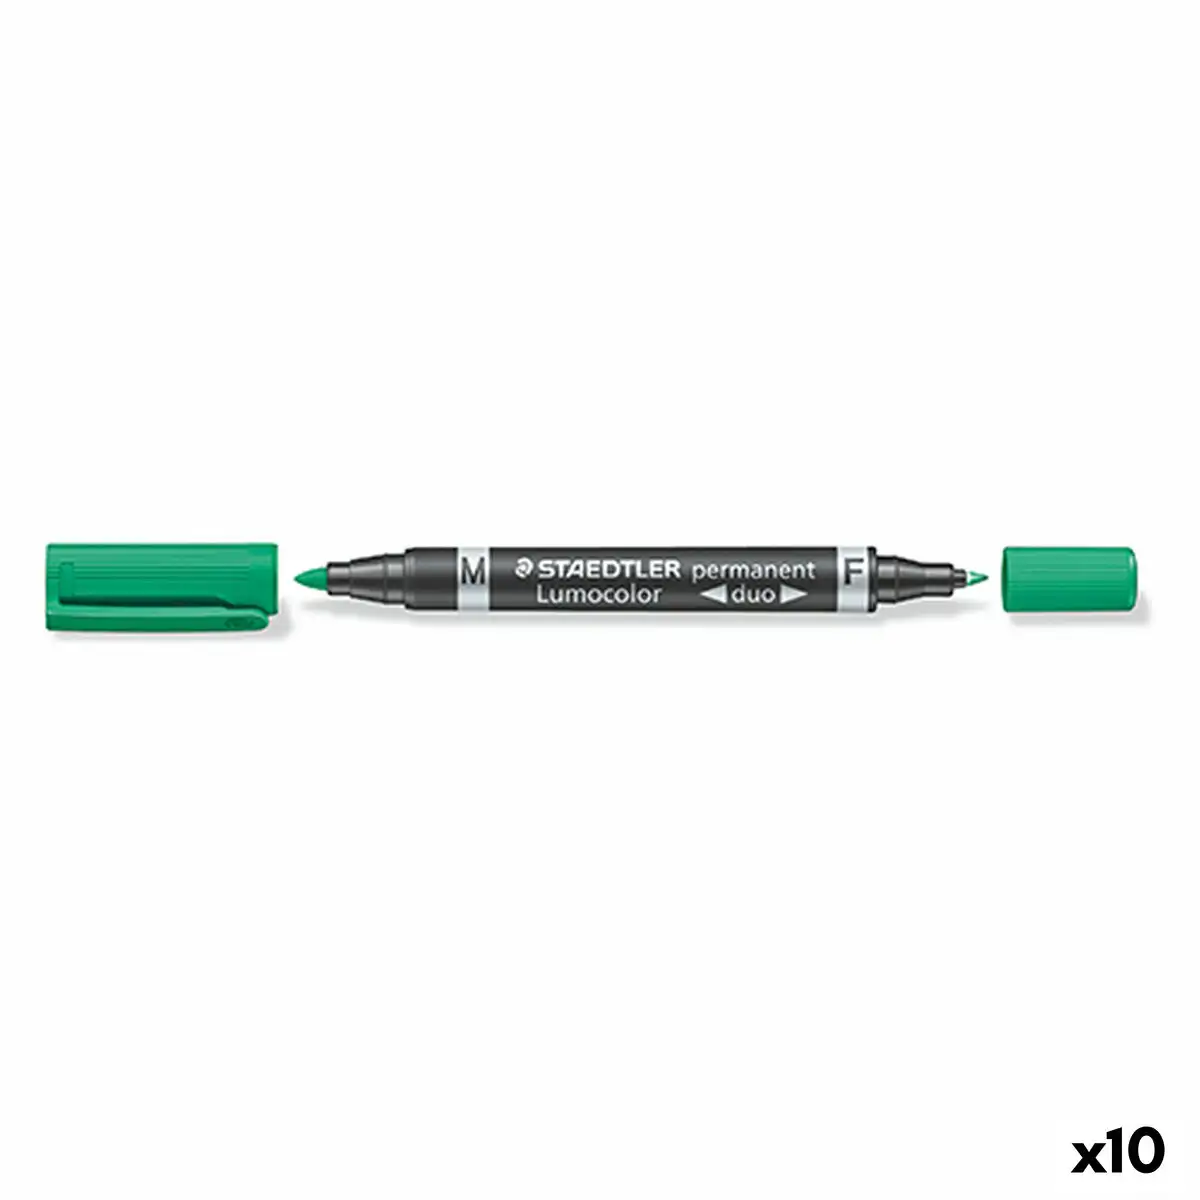 Marqueur permanent staedtler lumocolor duo vert 10 unites _2873. DIAYTAR SENEGAL - L'Art de Vivre en Couleurs. Découvrez notre boutique en ligne et trouvez des produits qui ajoutent une palette vibrante à votre quotidien.